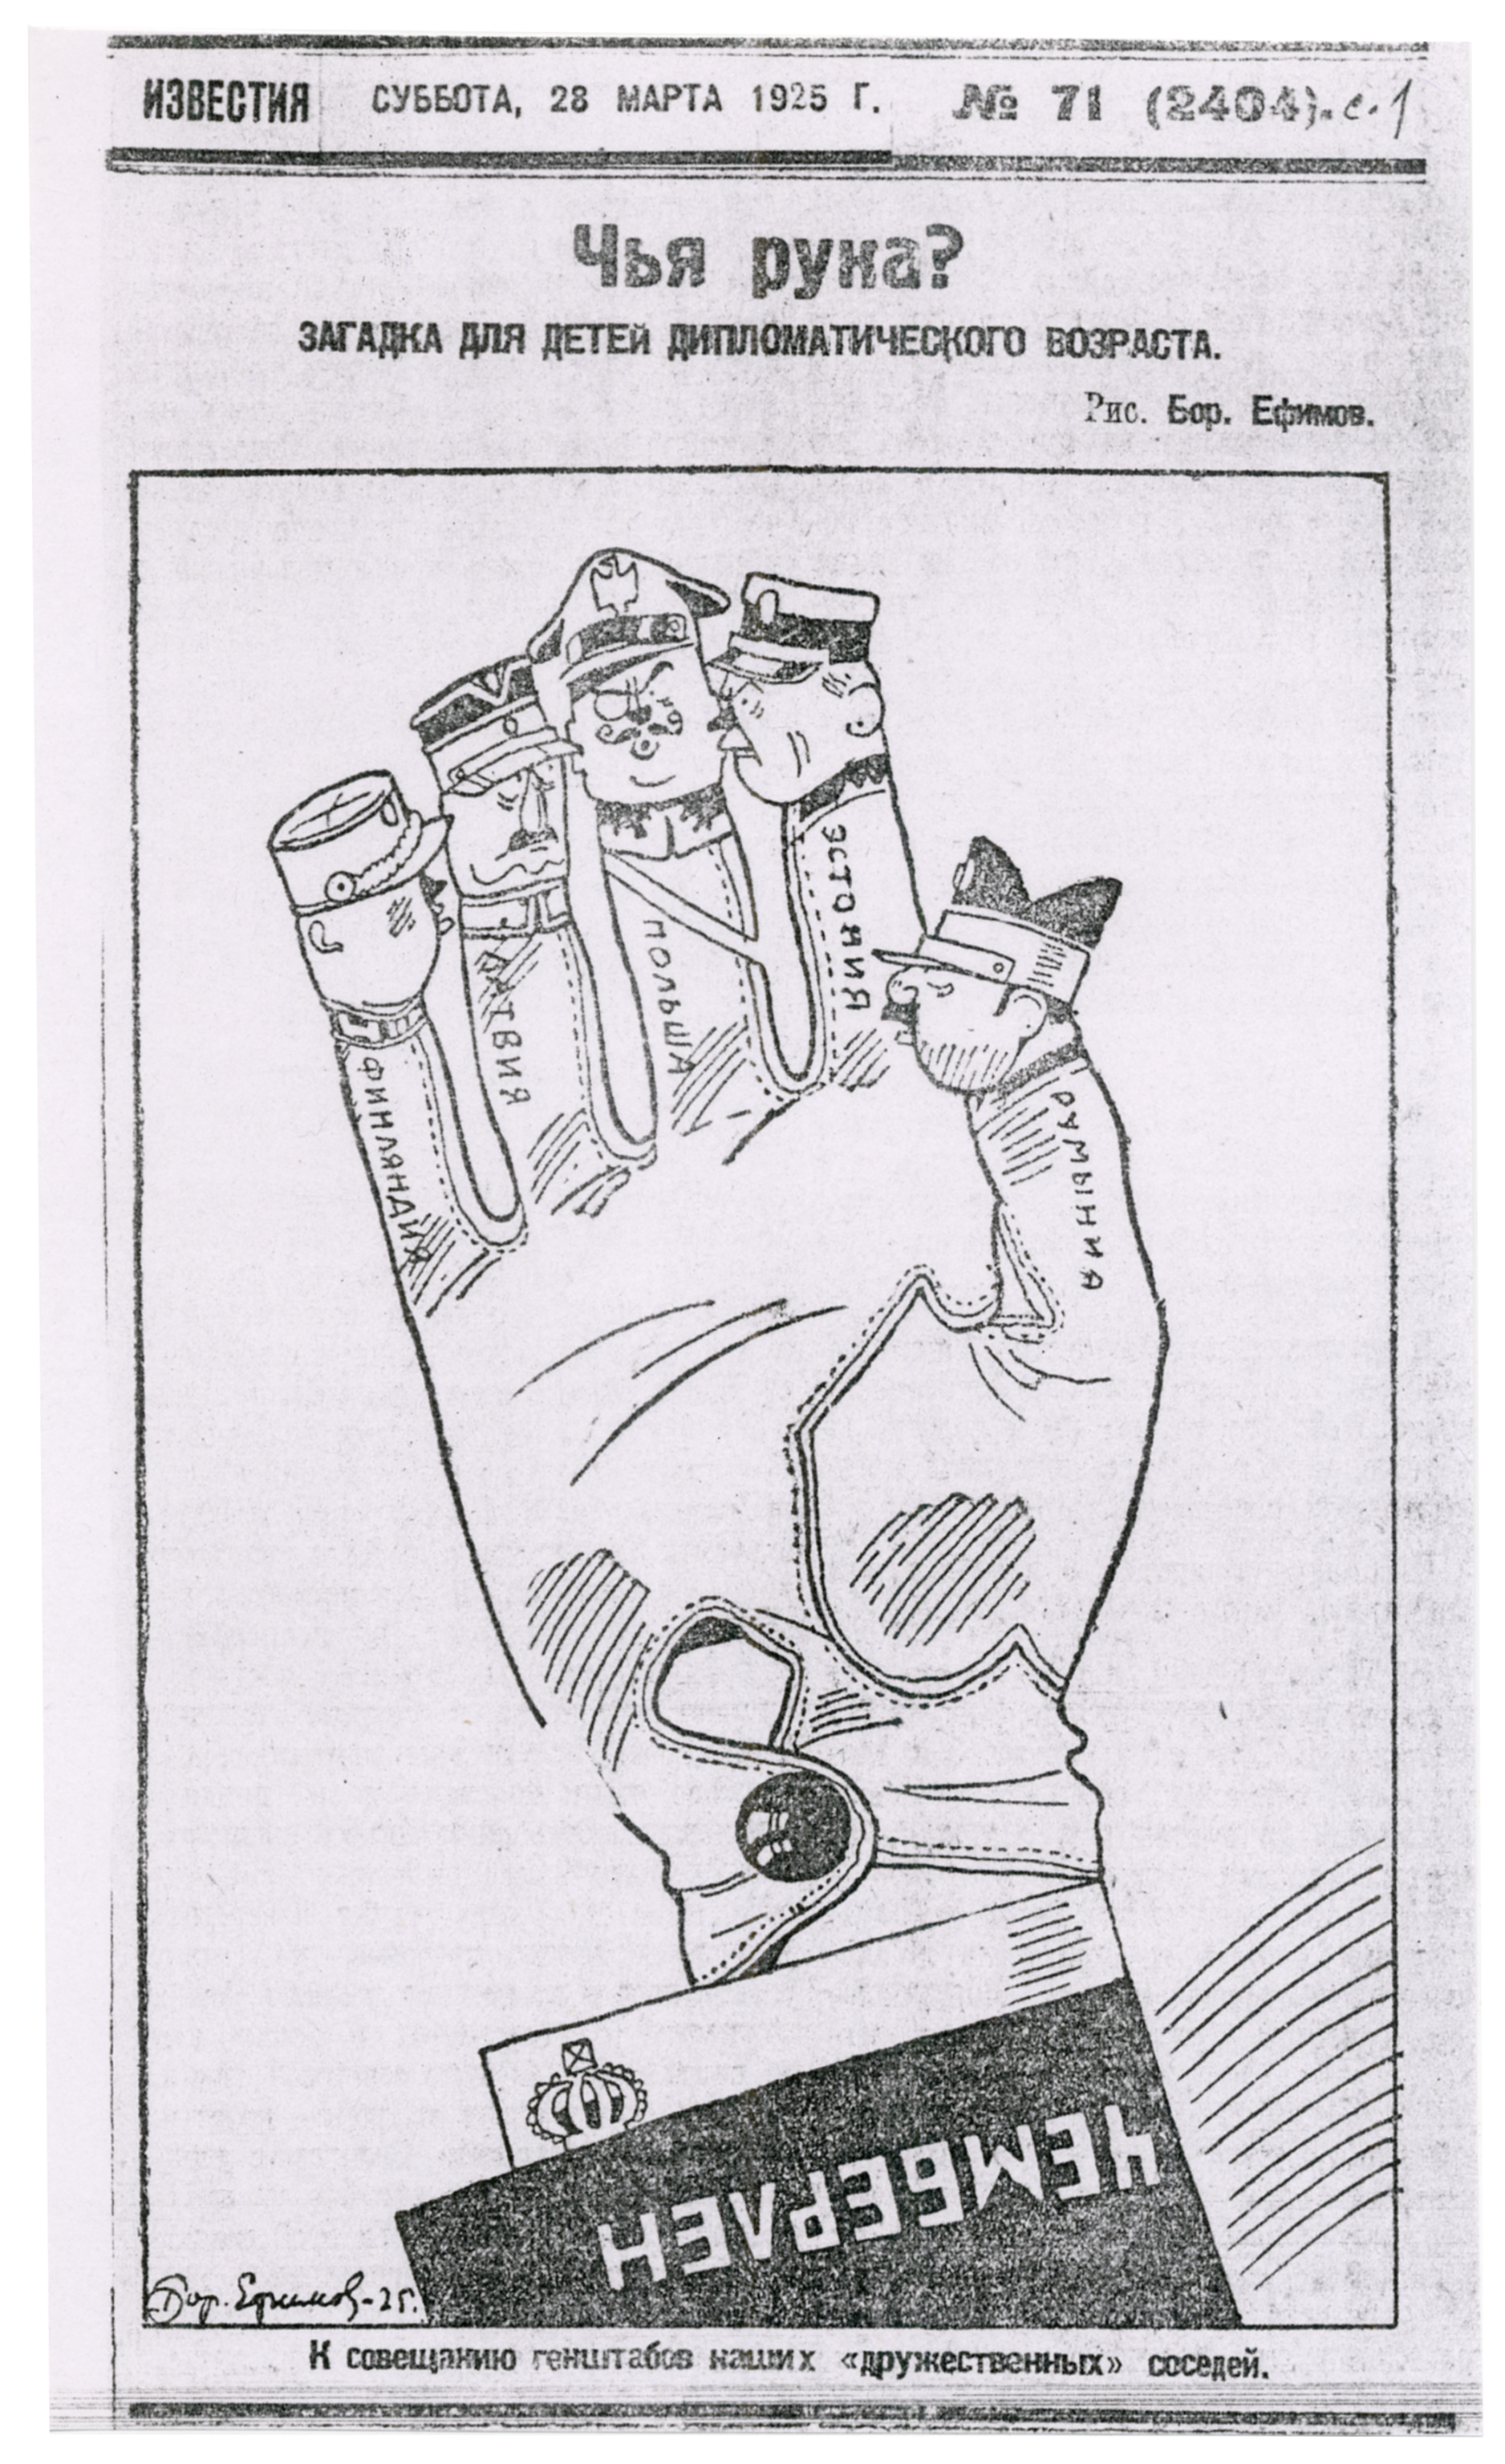 Efimov's 1925 cartoon: 'Whose Hand?'